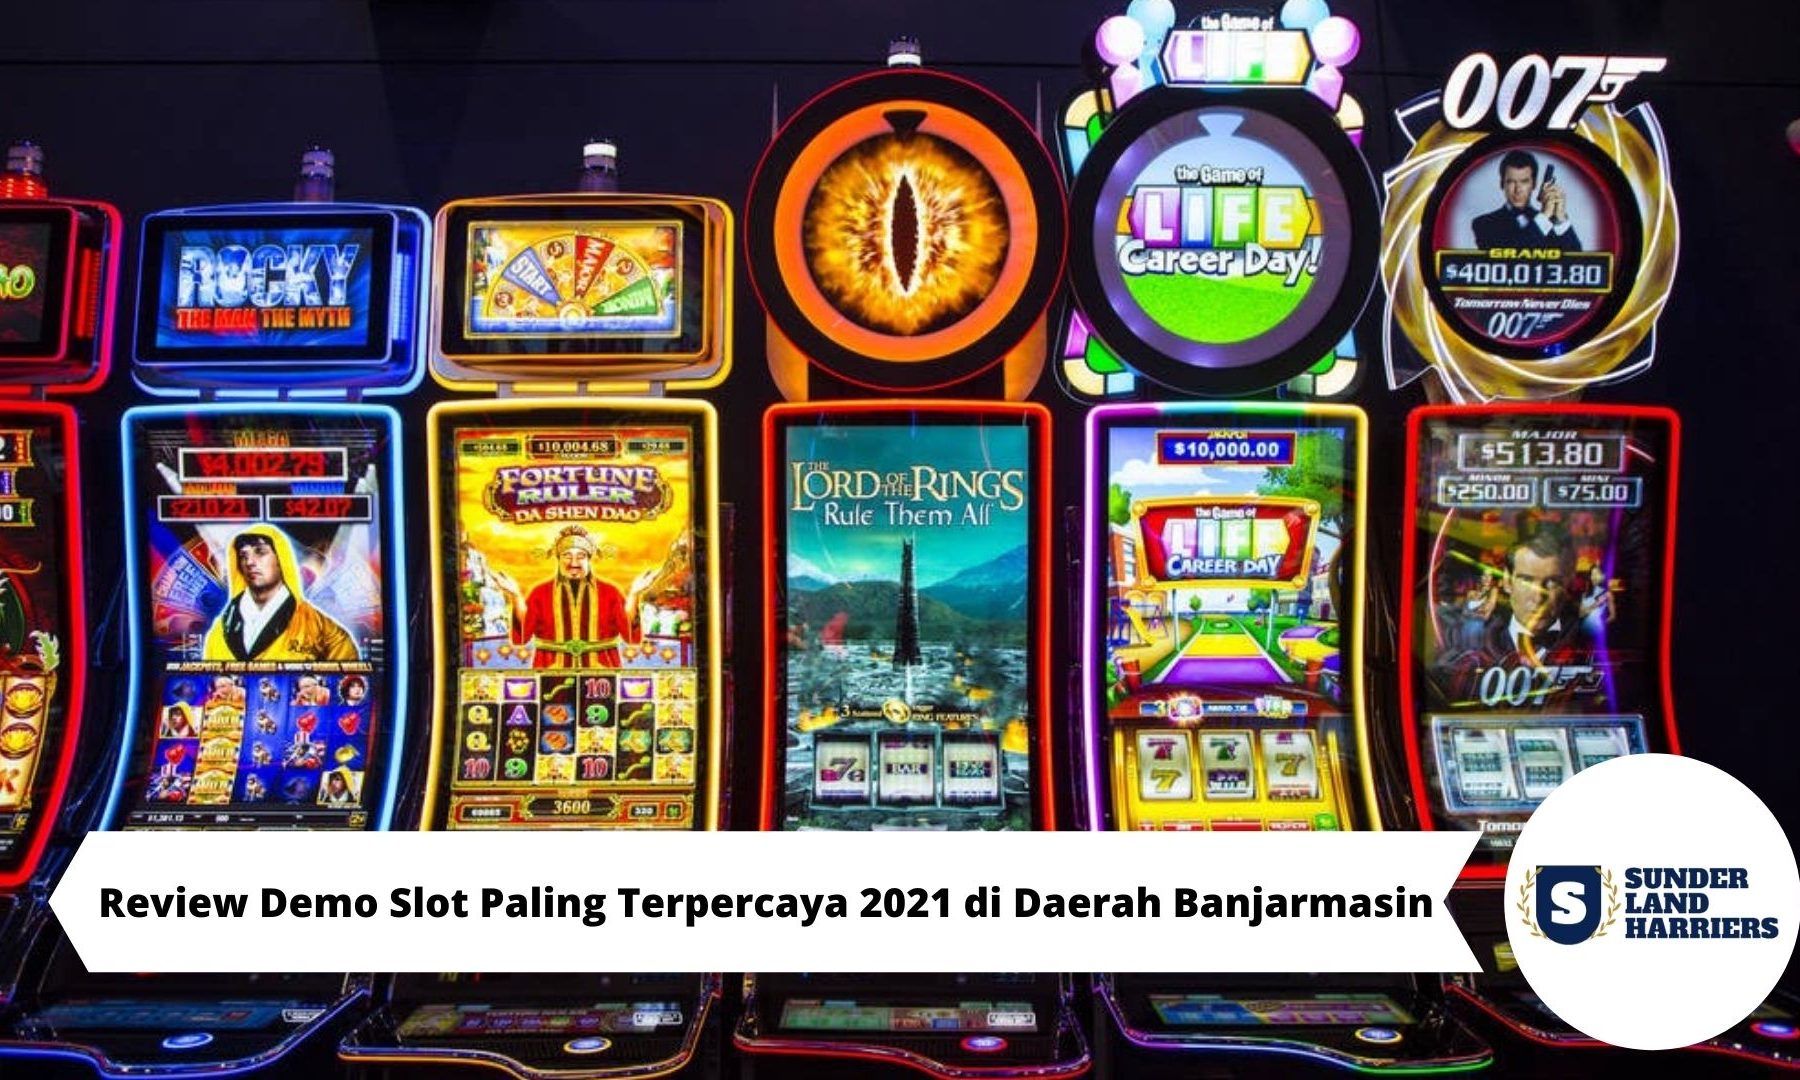 Review Demo Slot Paling Terpercaya 2021 di Daerah Banjarmasin